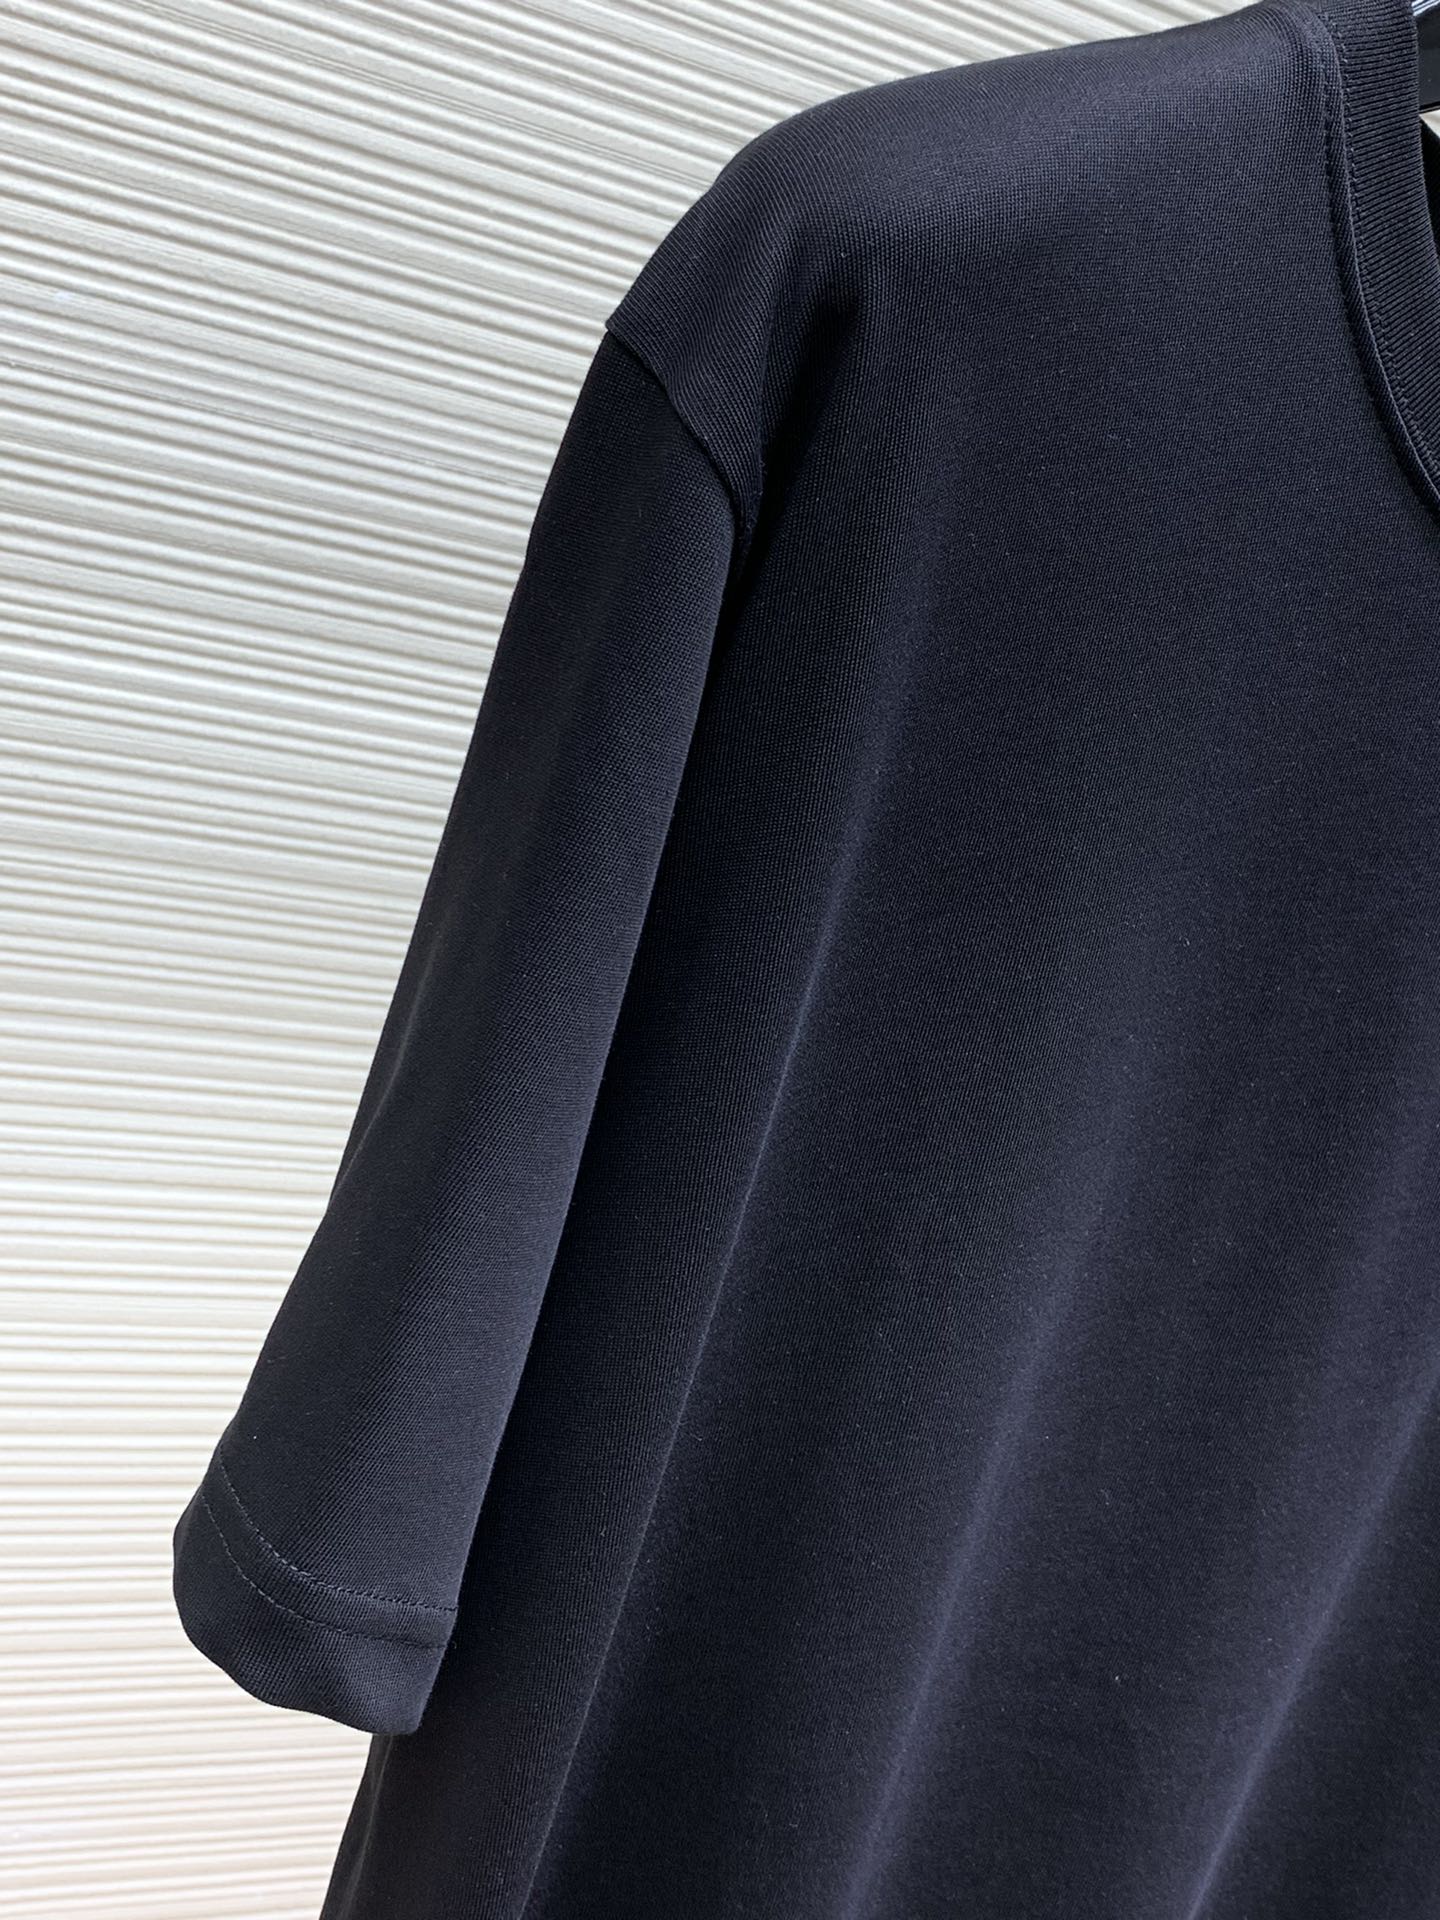 Loewe罗意威2024初夏最新款时尚休闲圆领短袖T恤原单狠货简约舒适版型不挑人采用进口原版面料舒适度极